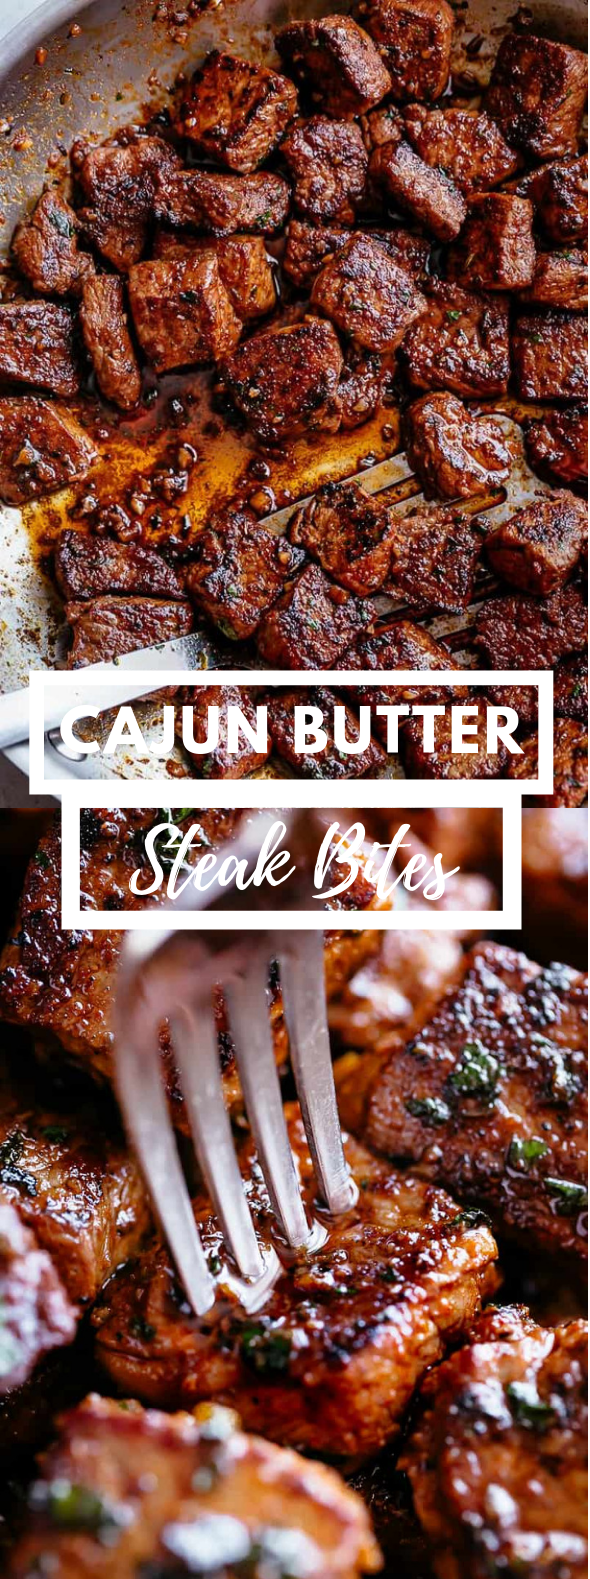 Cajun Butter Steak Bites #dinner #familyfavorite